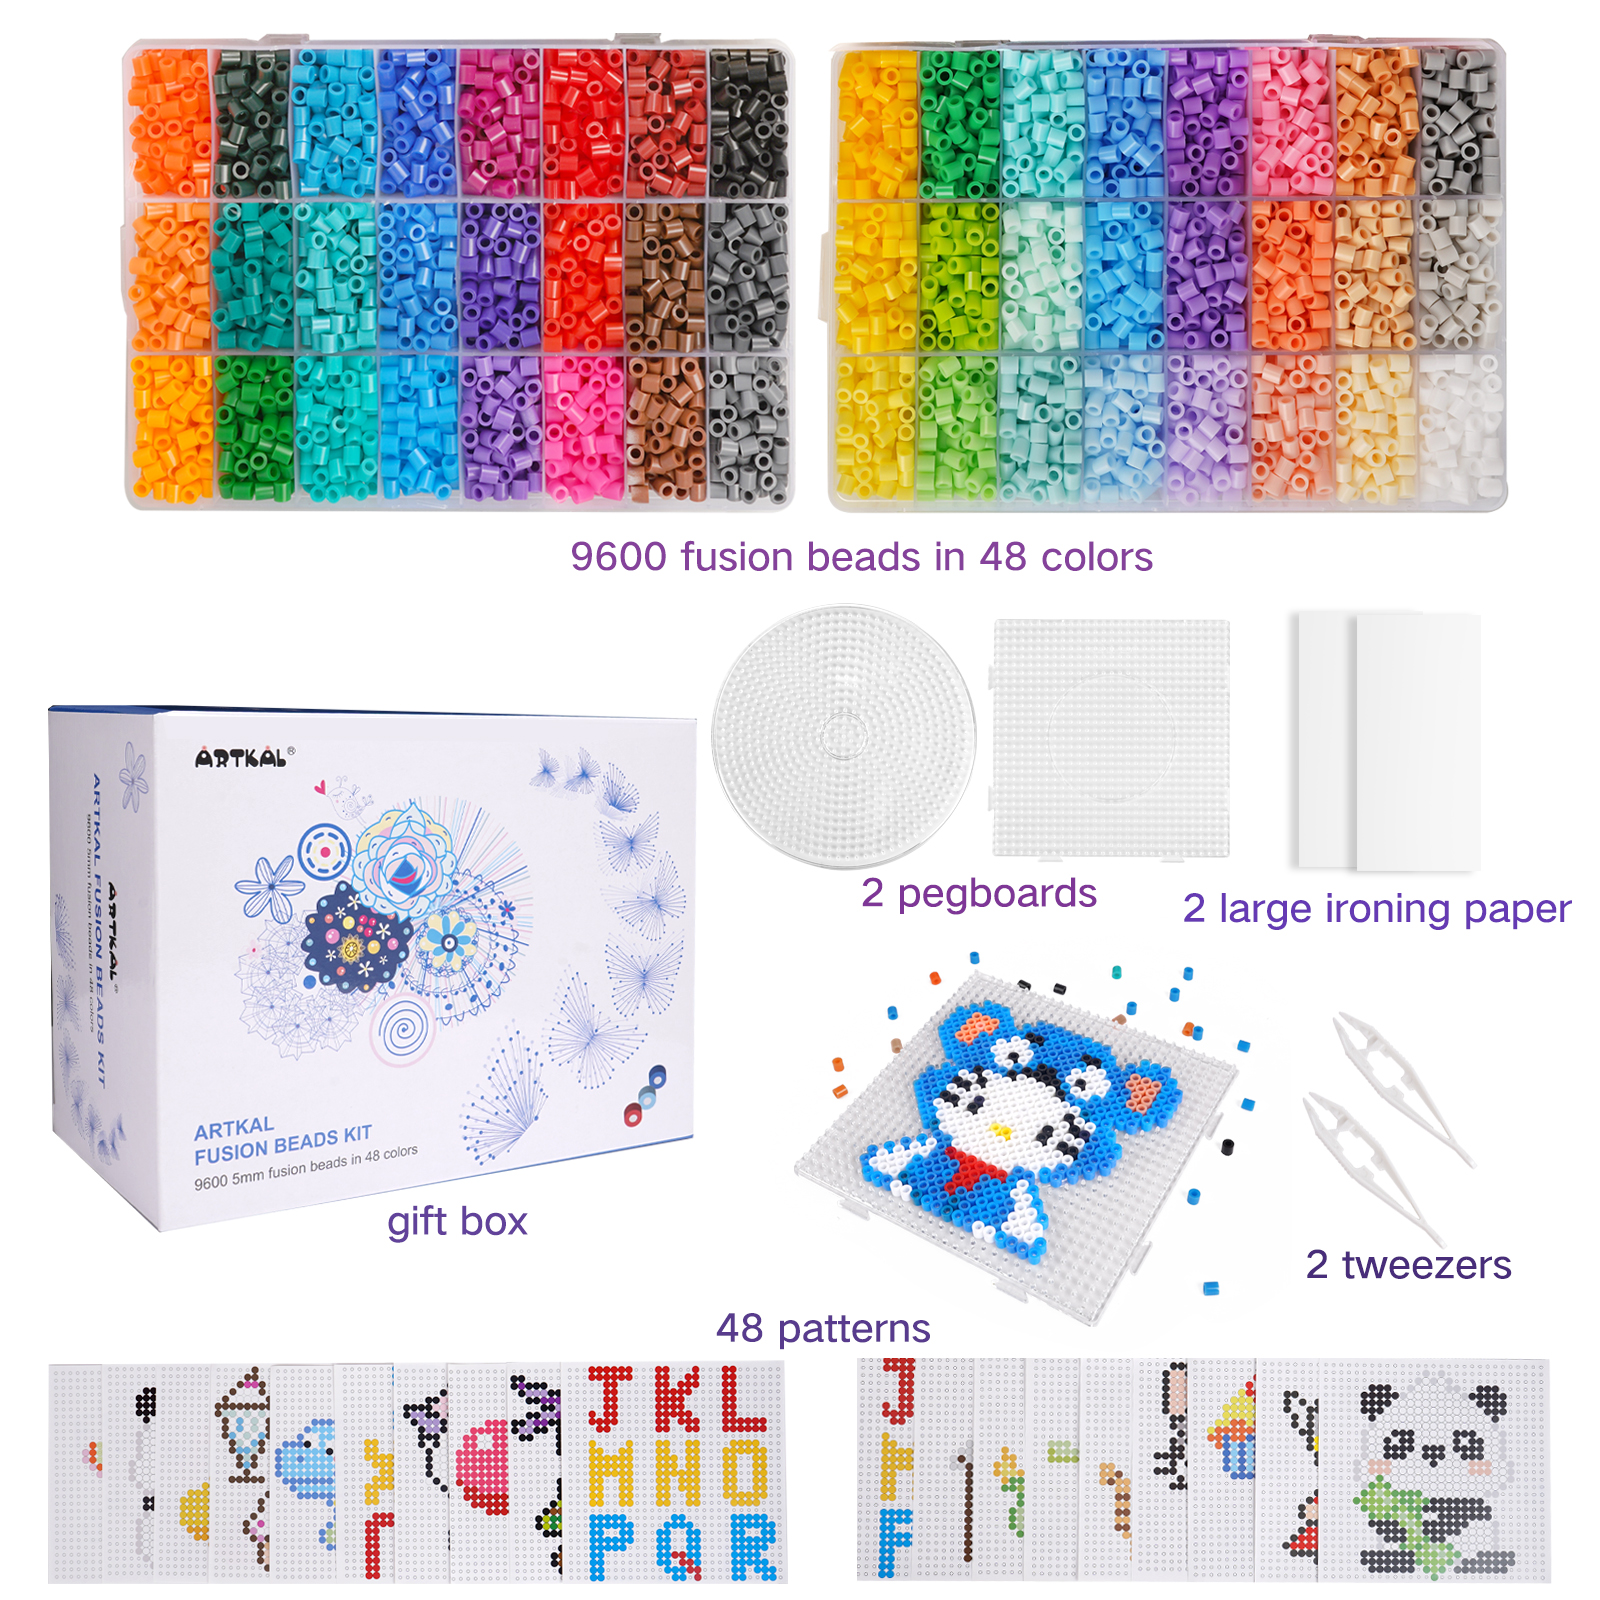 5mm fuse bead kits (2).jpg